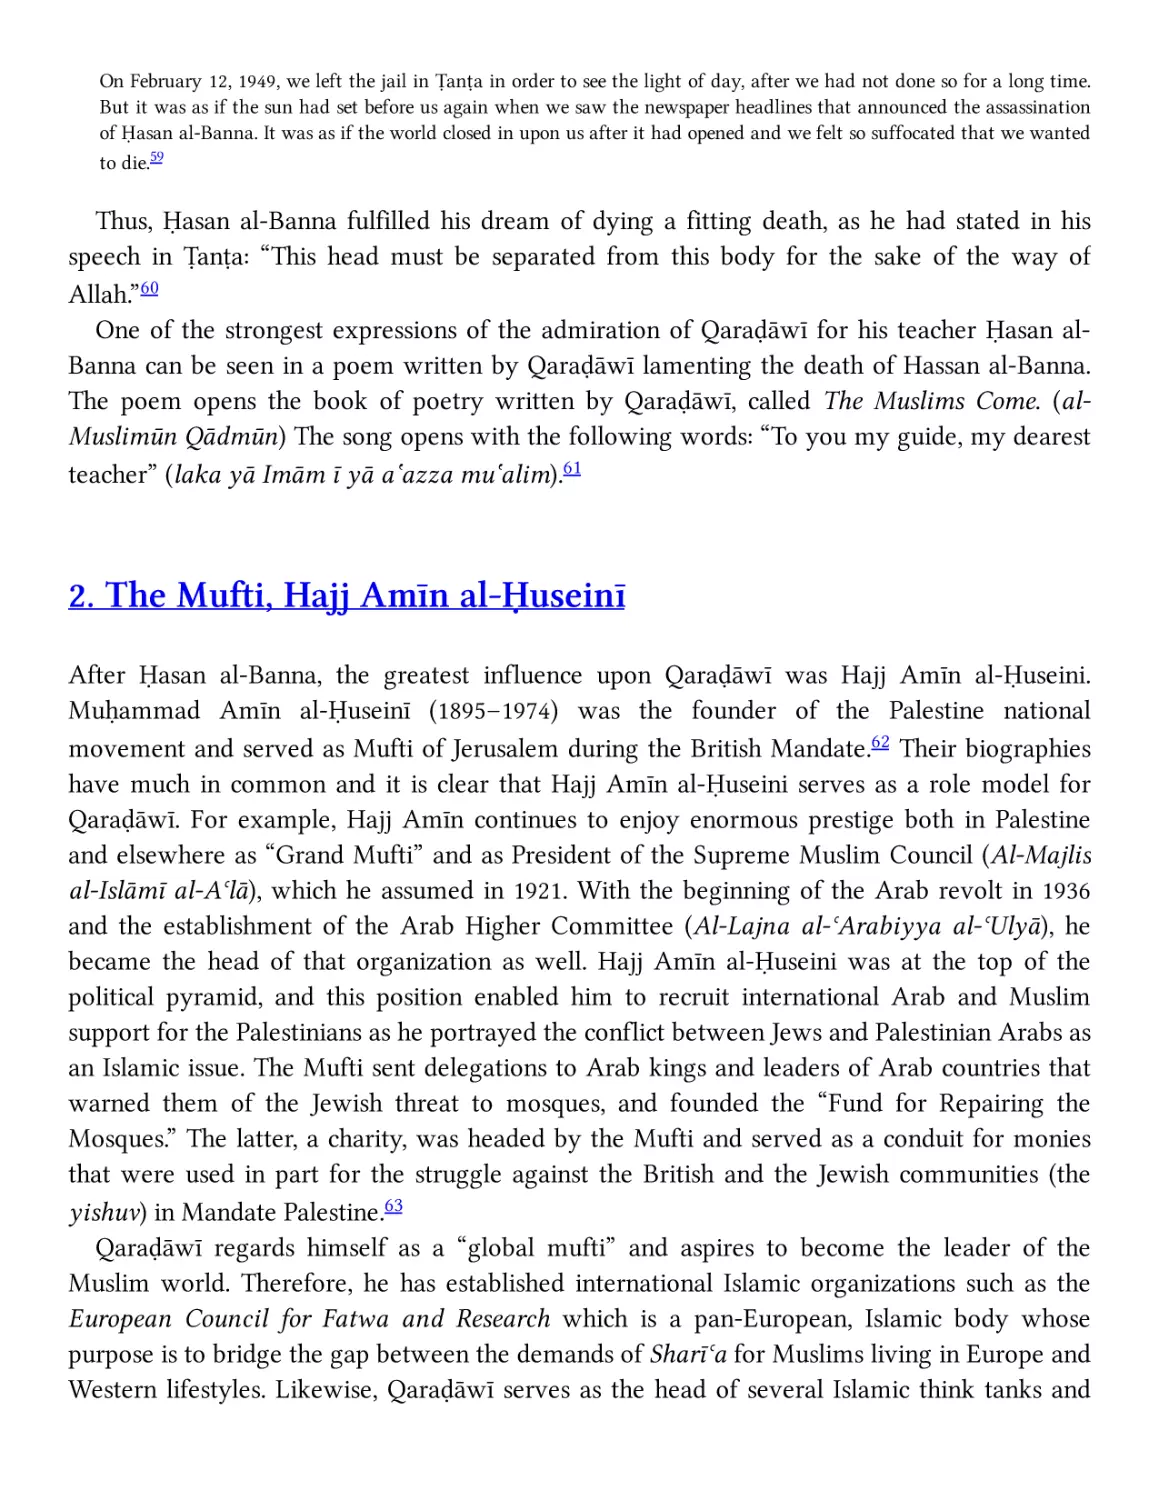 2. The Mufti, Hajj Amīn al-Ḥuseinī